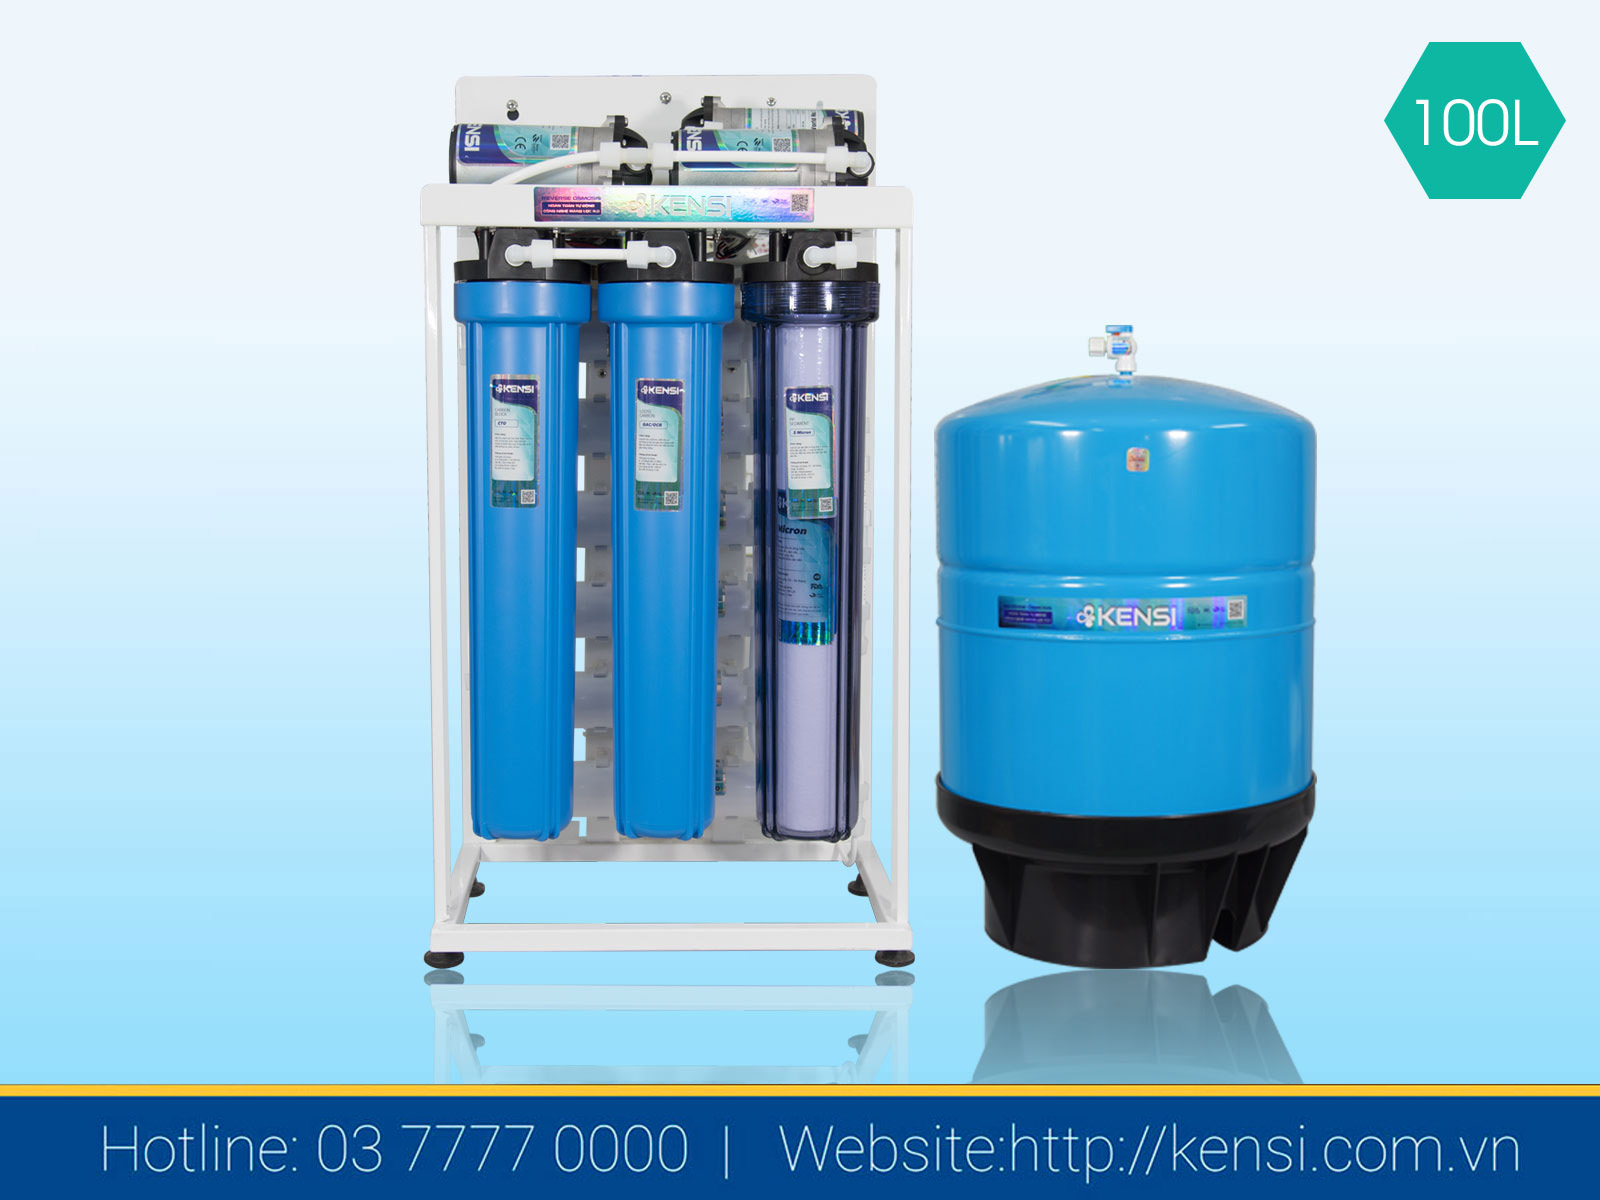 Hệ thống máy lọc nước bán công nghiệp 100LH